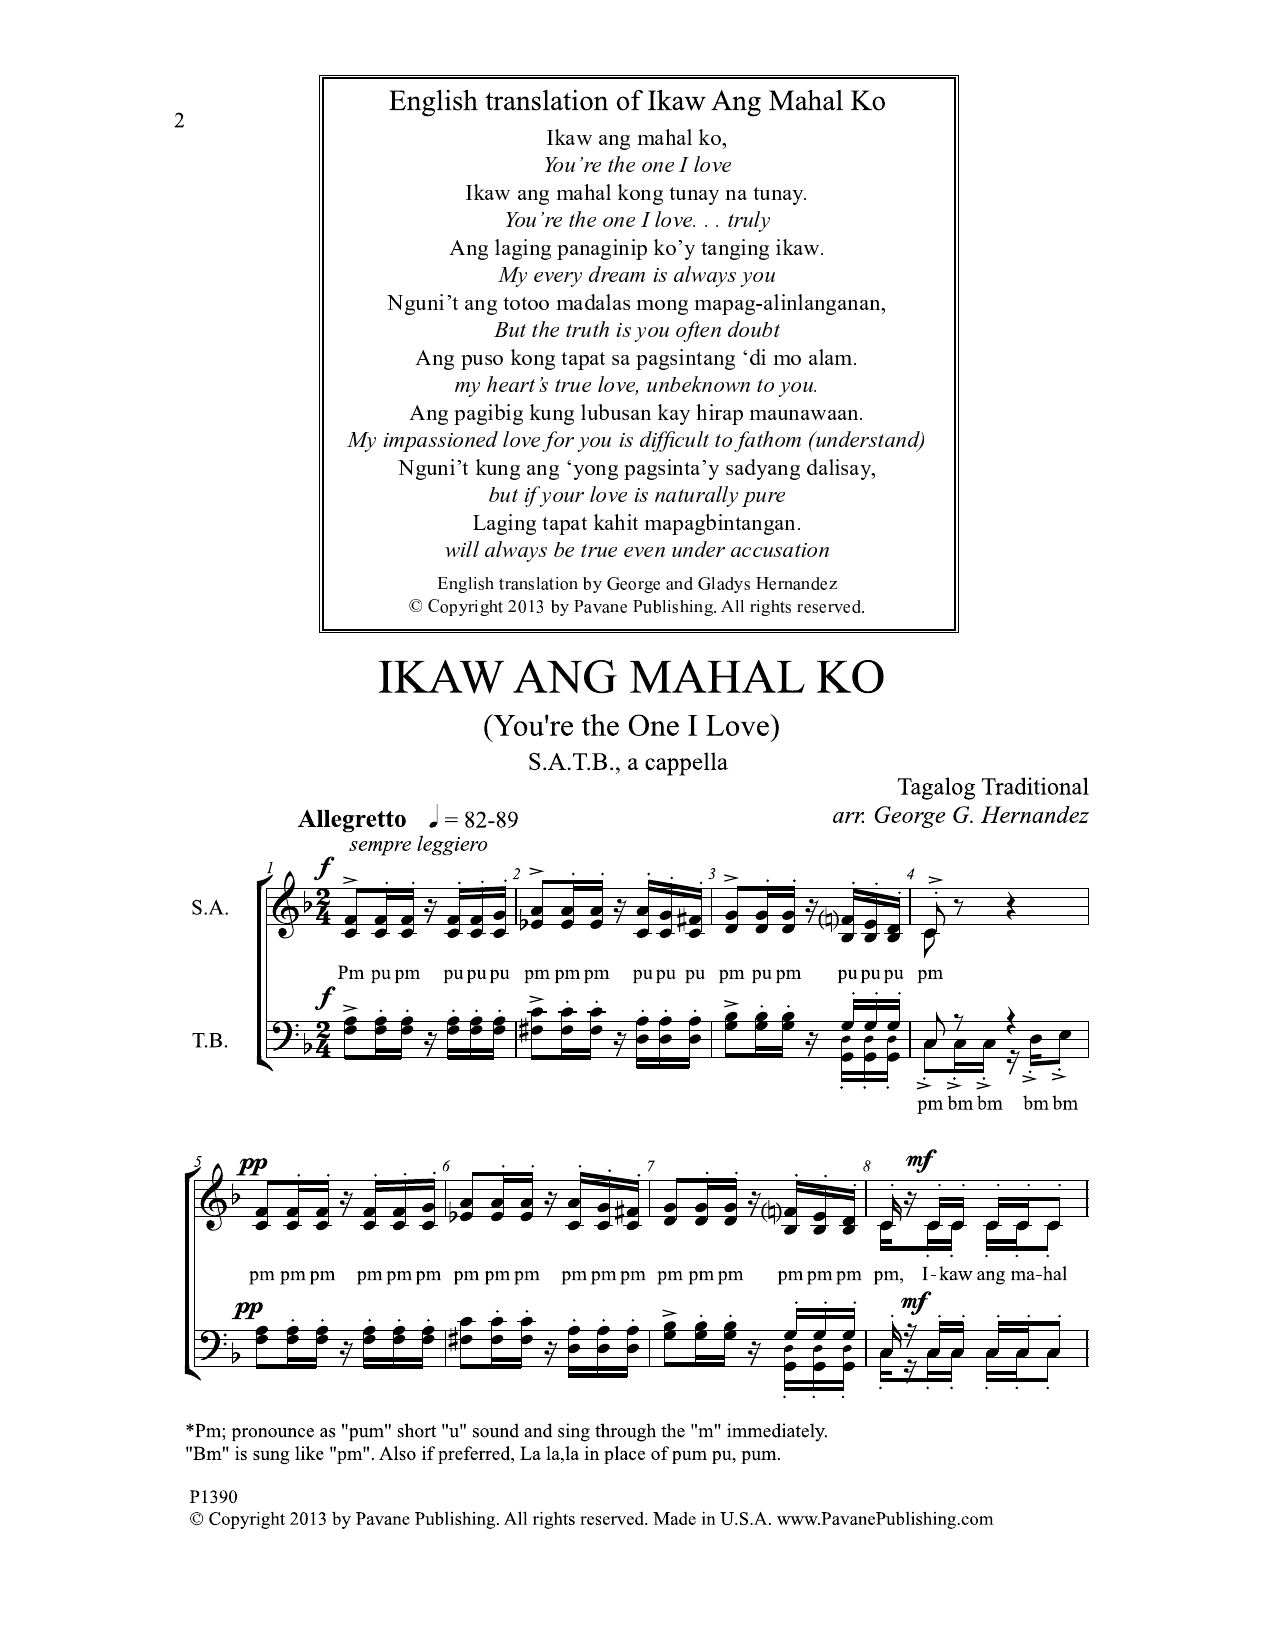 Download George G. Hernandez Ikaw Ang Mahal Ko Sheet Music